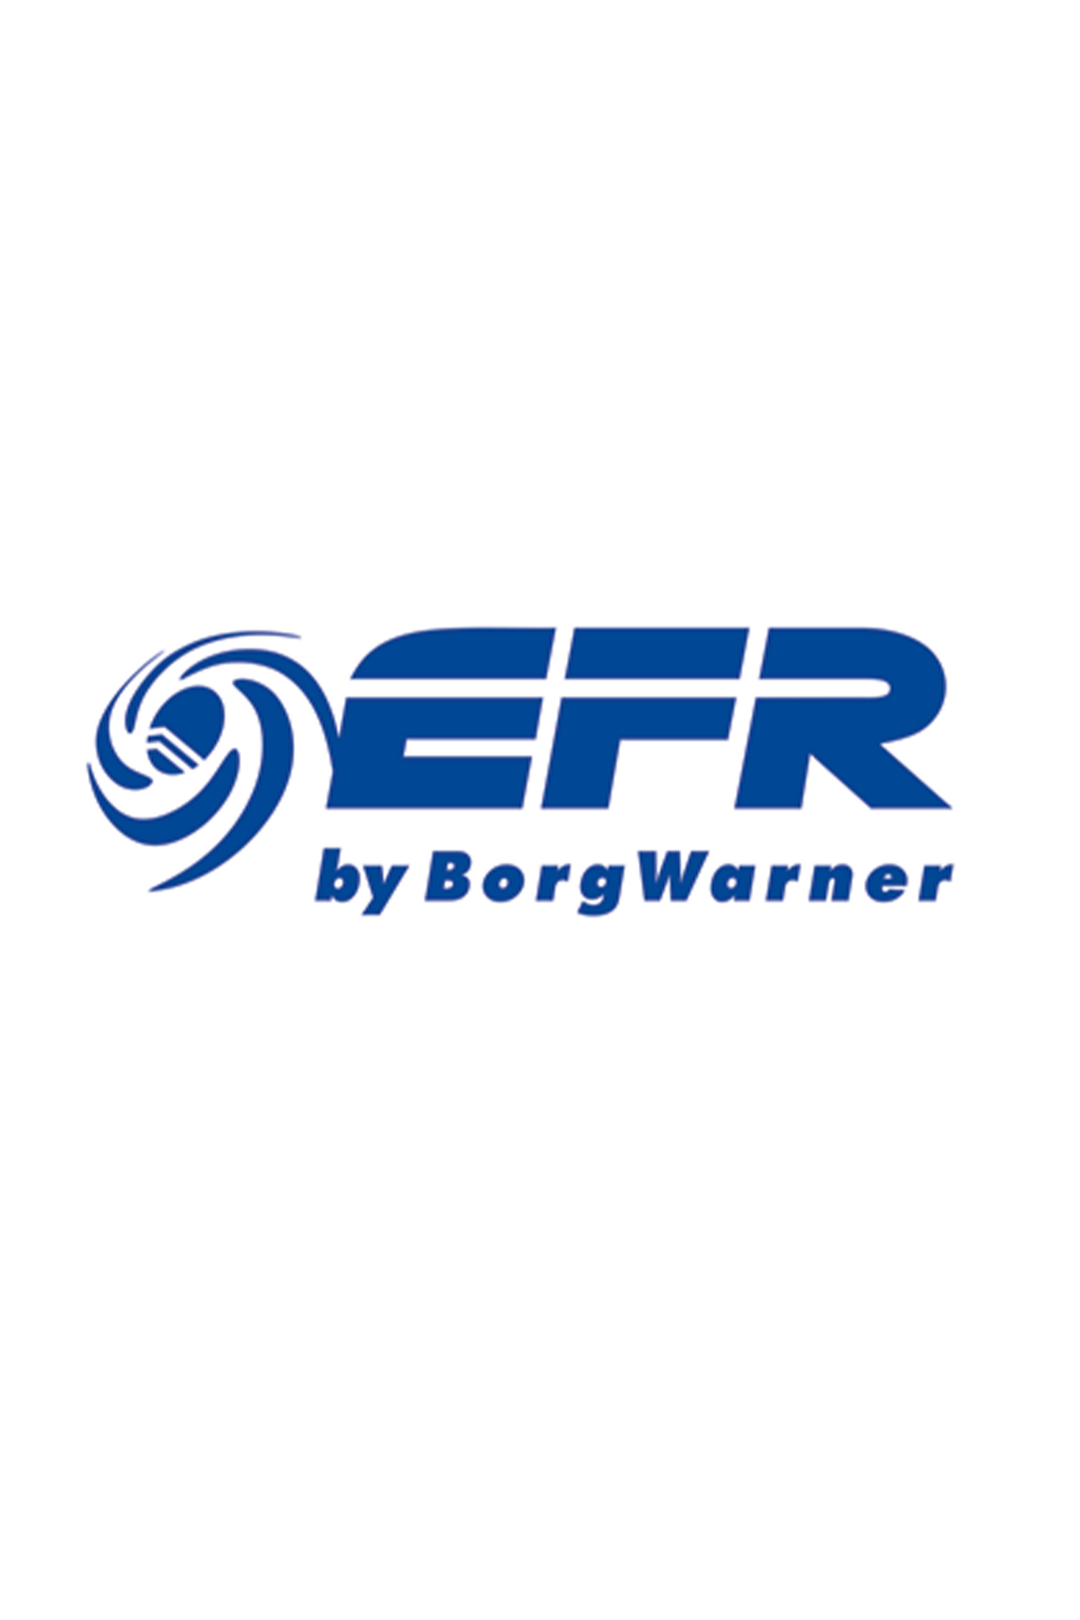 Borgwarner EFR